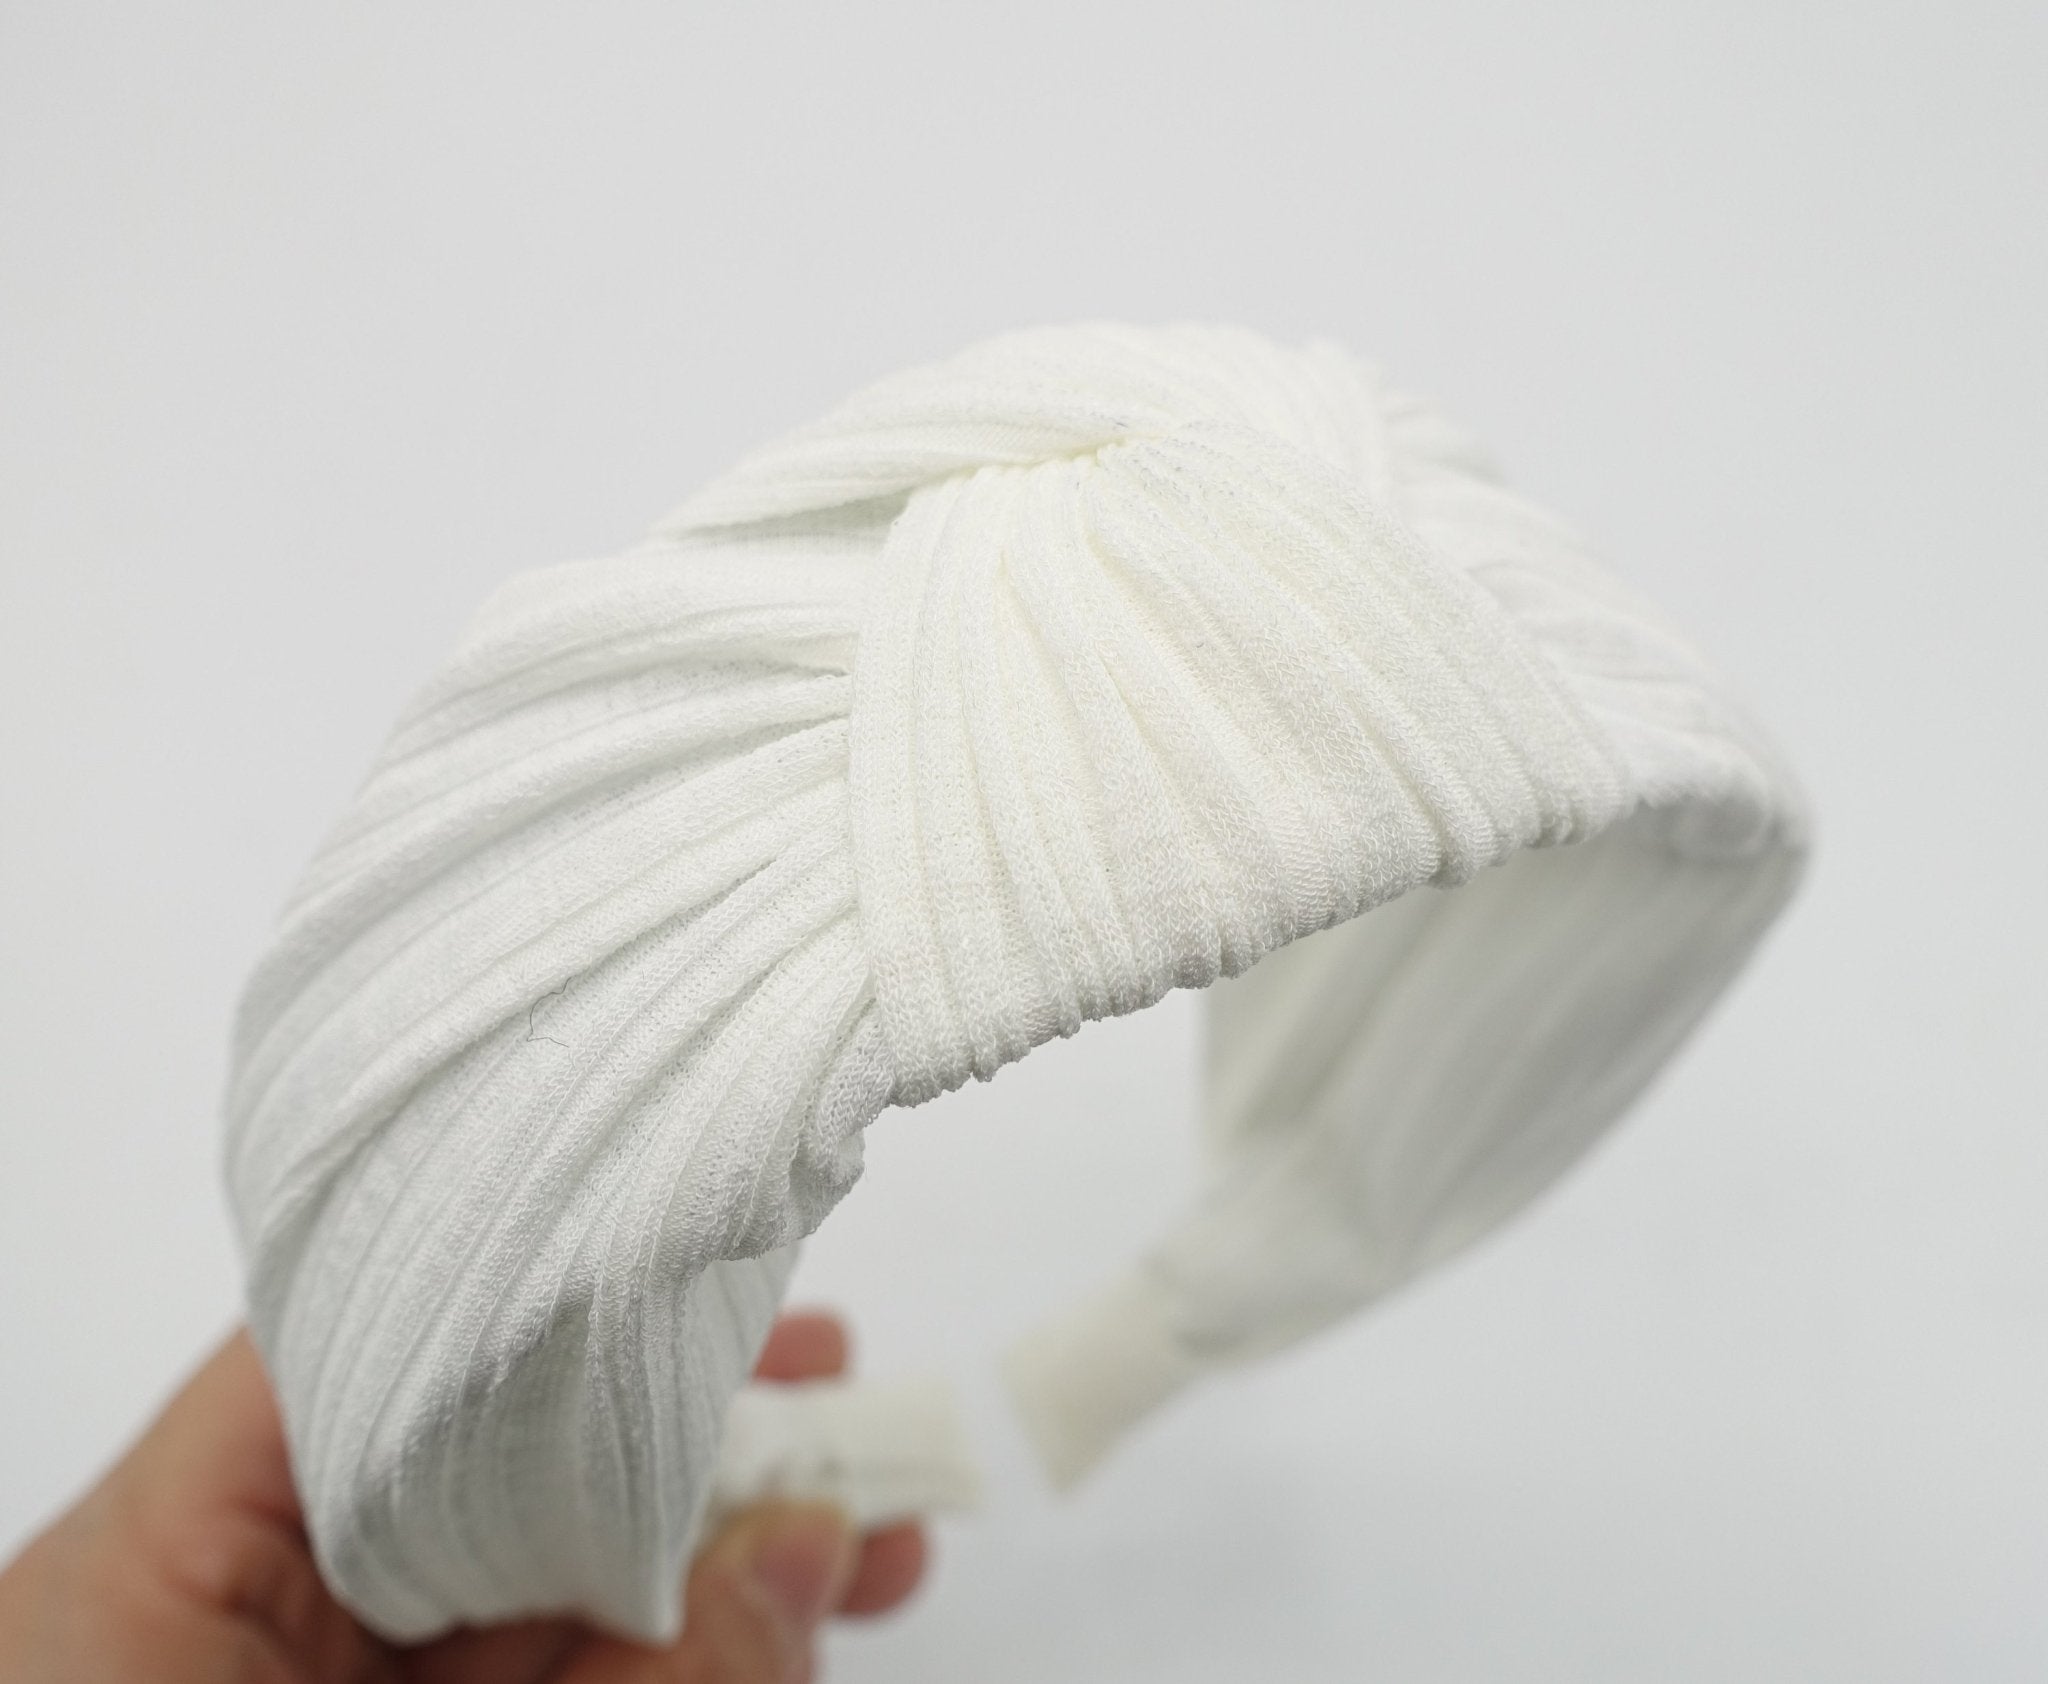 VeryShine thin stretch chiffon knit knotted headband